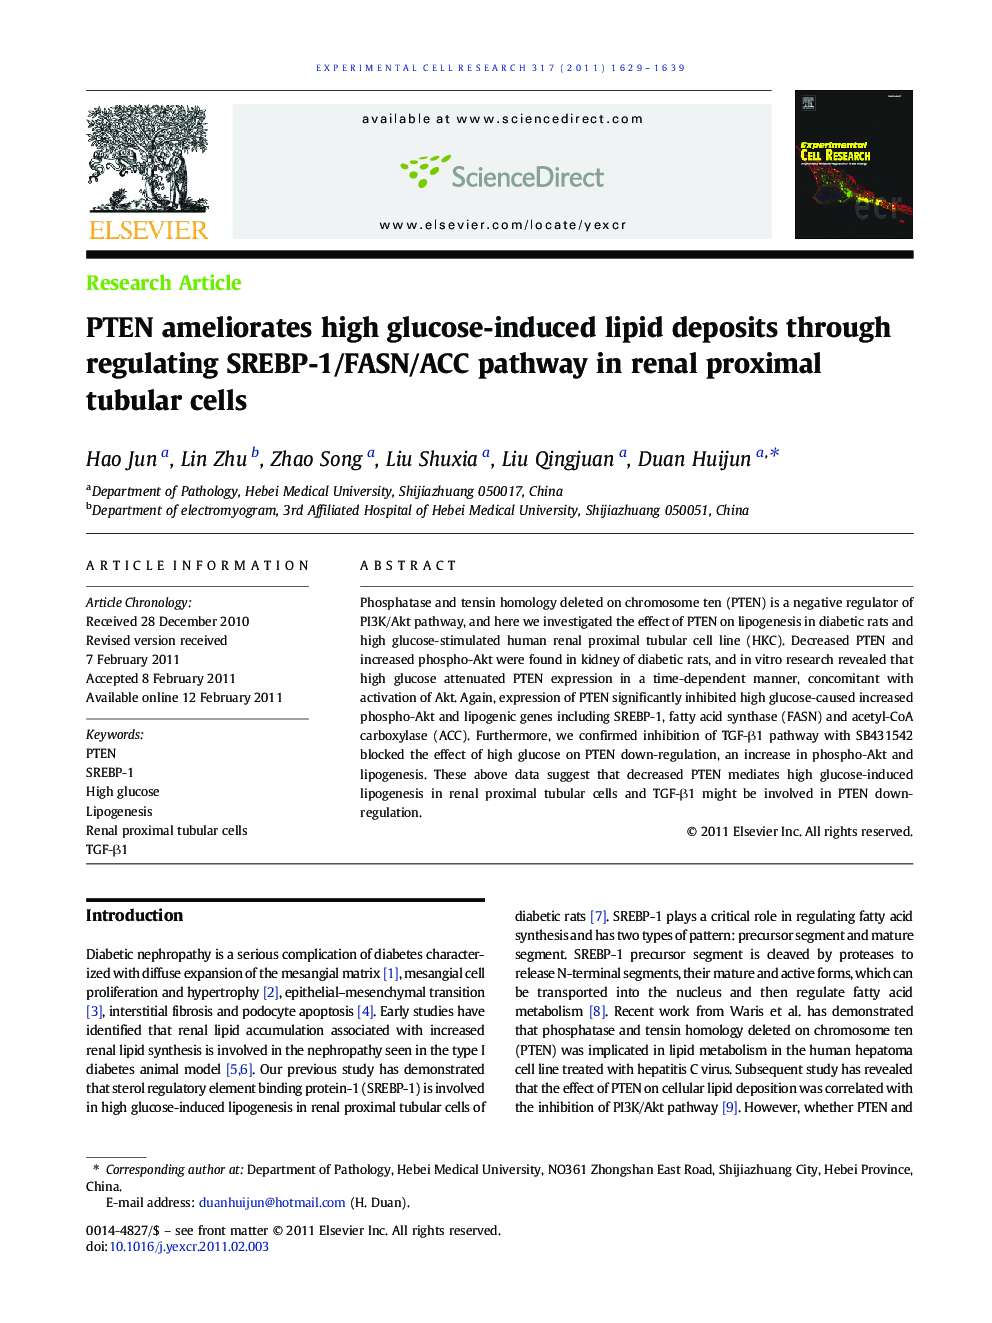 PTEN ameliorates high glucose-induced lipid deposits through regulating SREBP-1/FASN/ACC pathway in renal proximal tubular cells